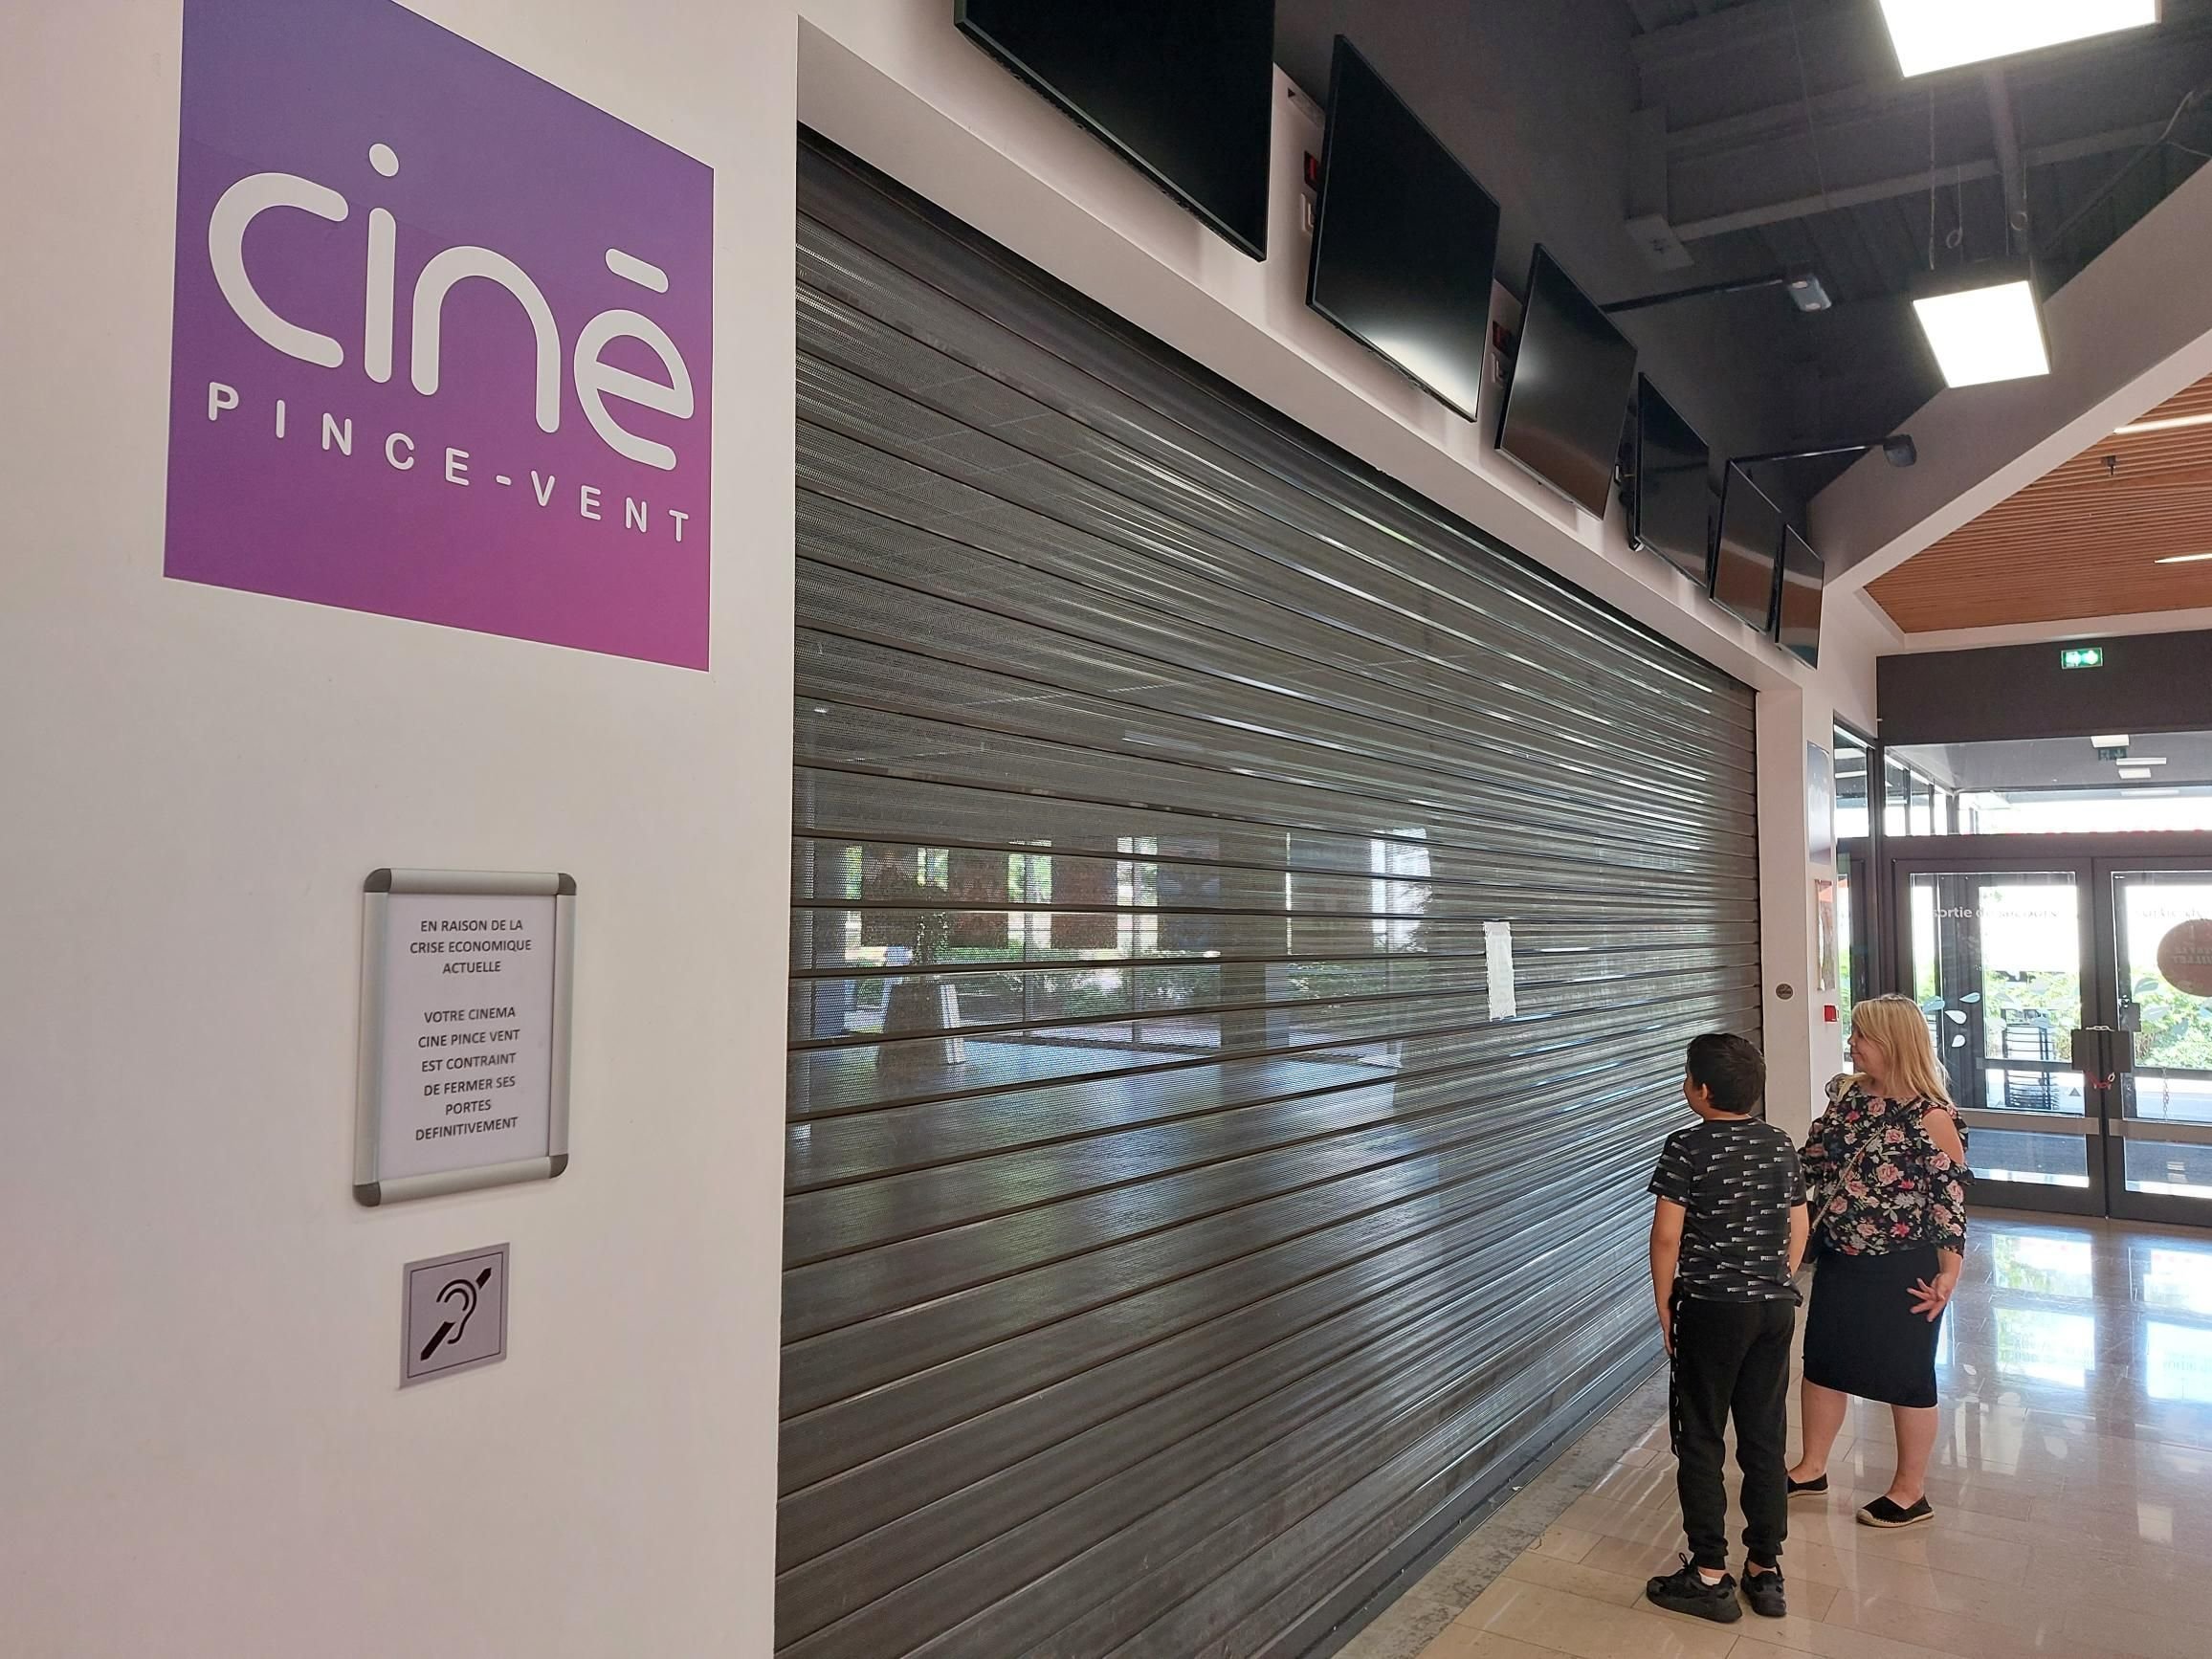 Chennevières (Val-de-Marne), ce jeudi. Le cinéma du centre commercial Pince-Vent a définitivement fermé ses portes mercredi soir pour des raisons financières. LP/Laure Parny